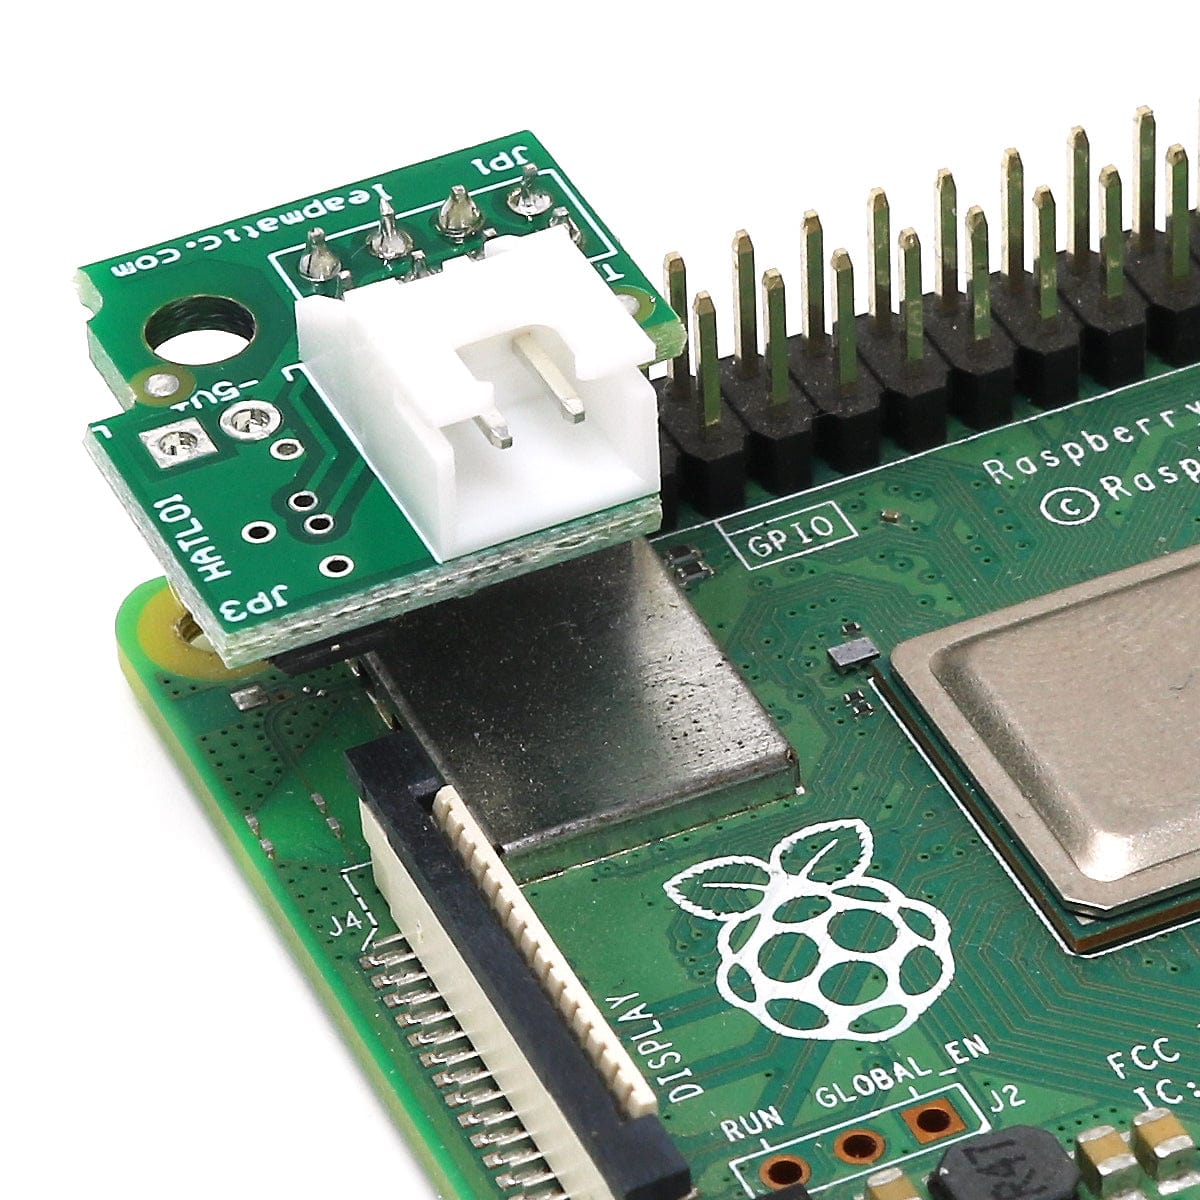 Auto-Fan Control & Crypto Module for Raspberry Pi - The Pi Hut